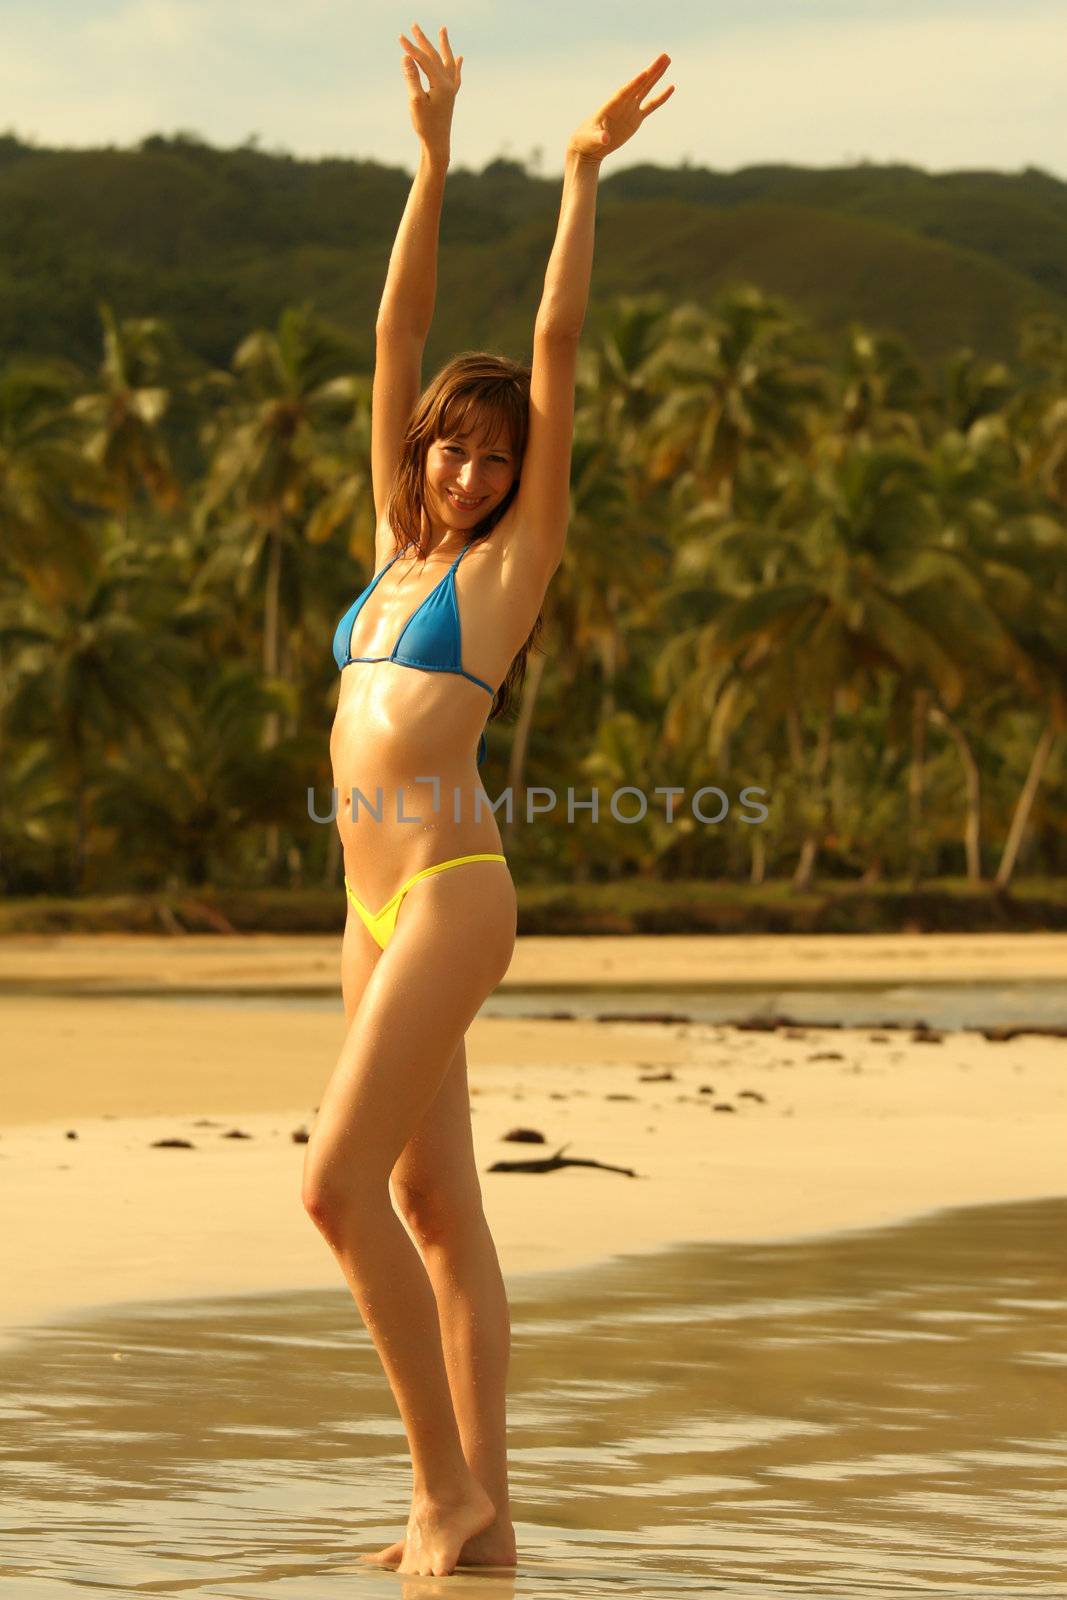 happy bikini girl posing on the beach